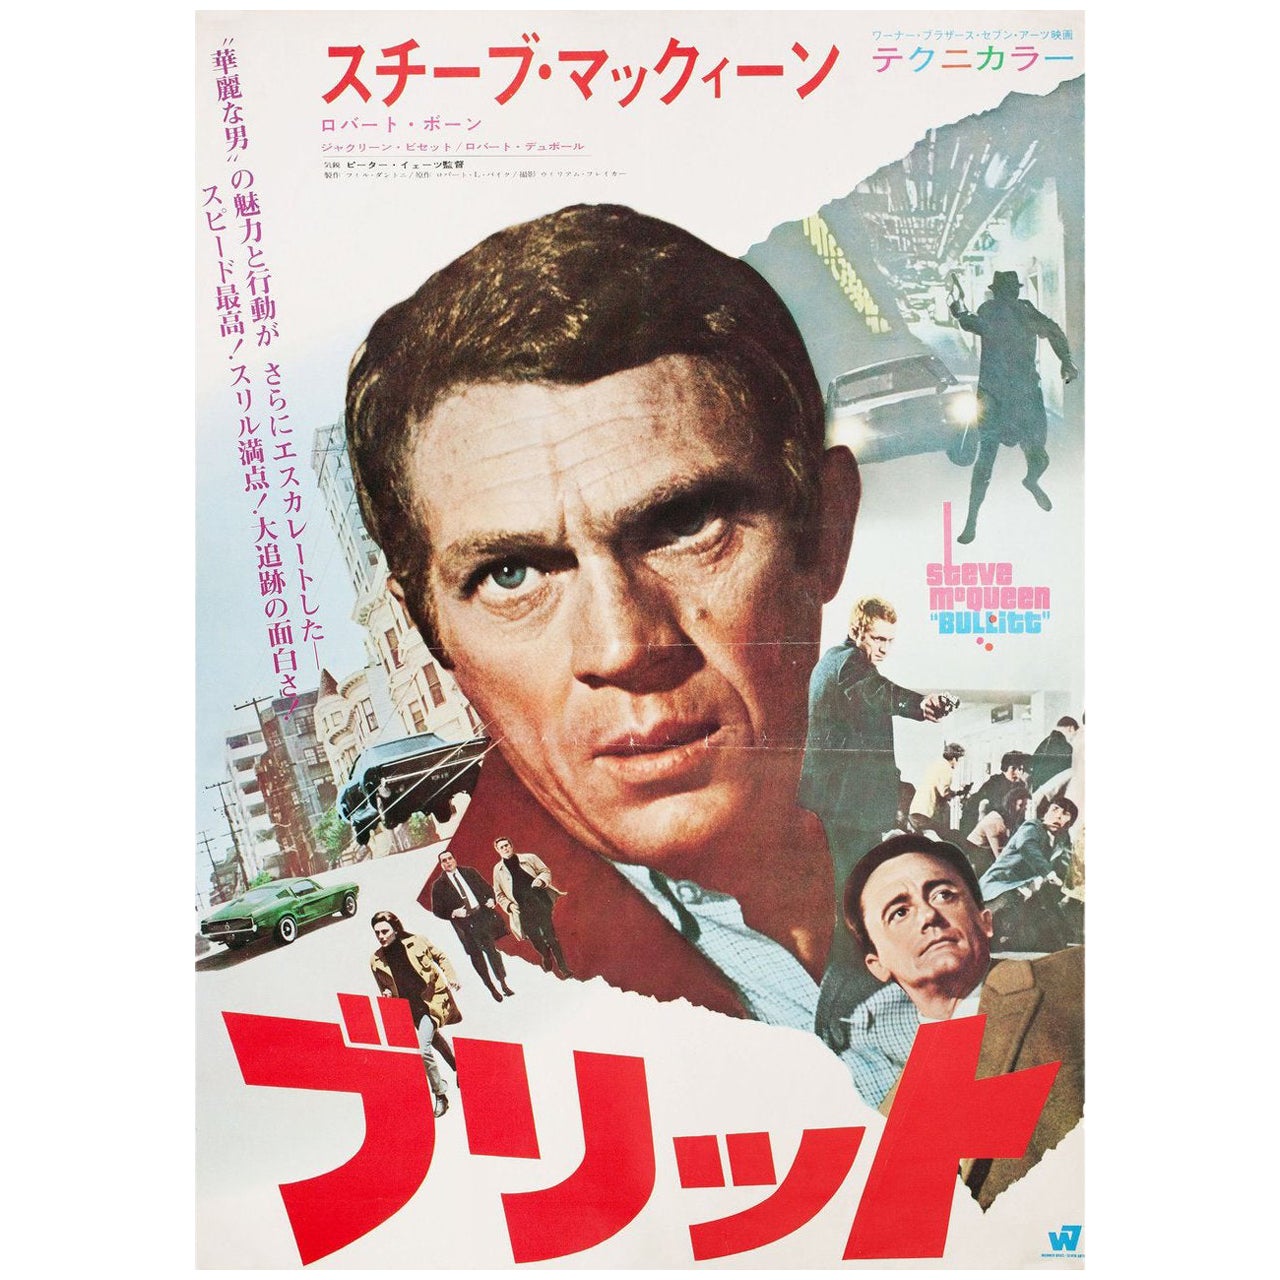 Bullitt 1968 Japanese Film Poster For Sale At 1stdibs